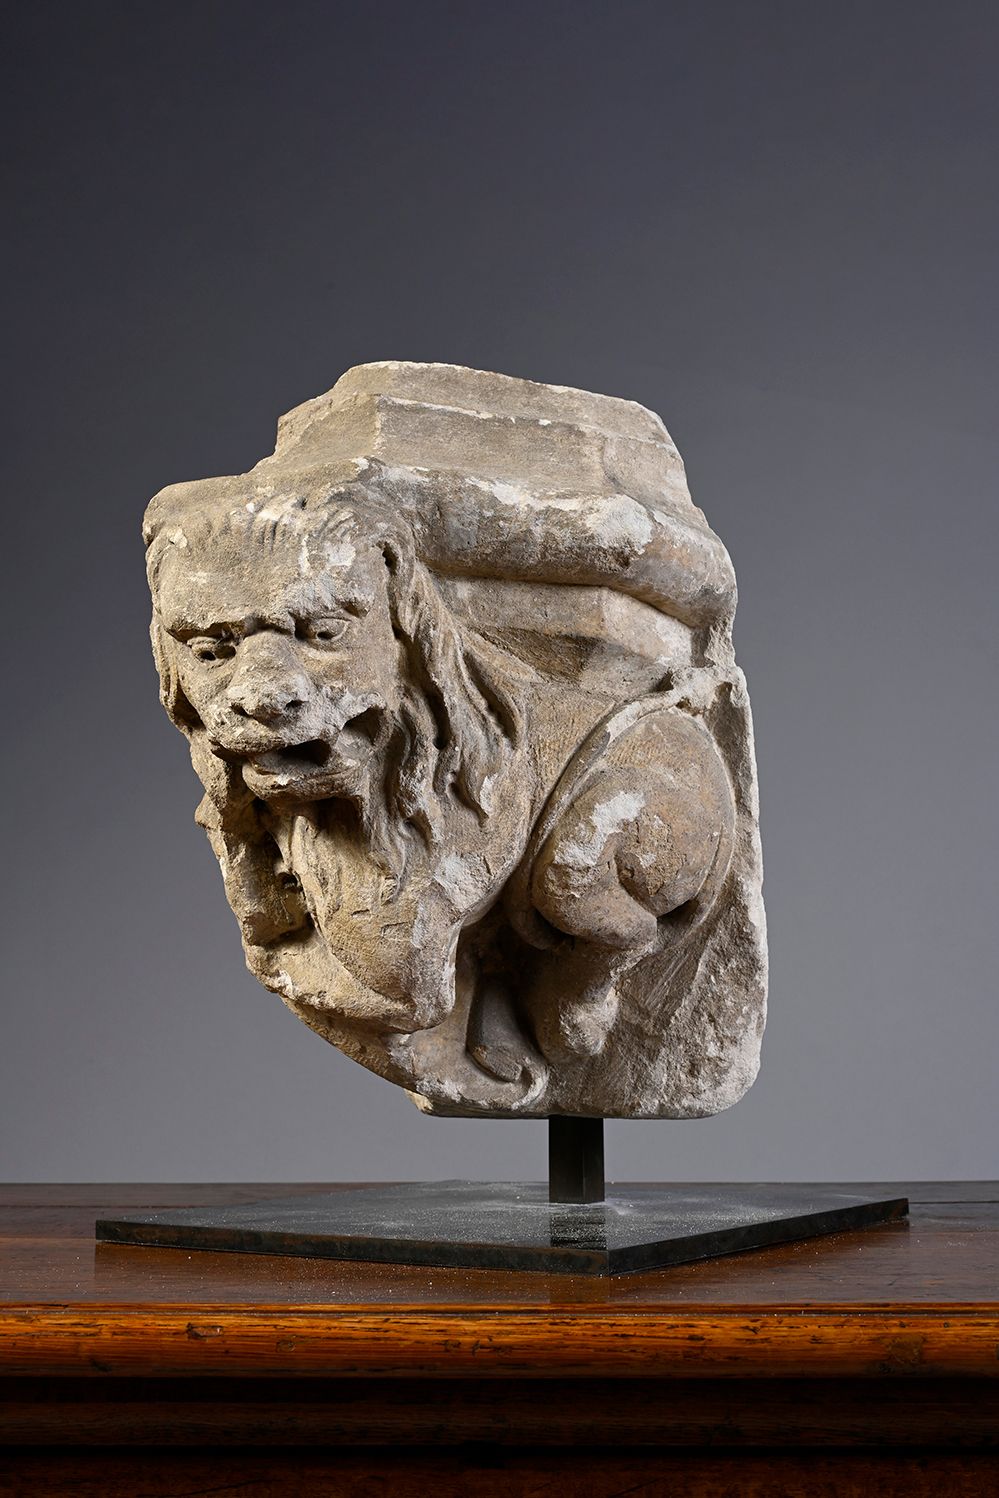 Null 石灰岩雕刻的屁股上装饰着一只手持盾牌的狮子。
15世纪末
H.38 cm - W. 25 cm - D. 30 cm
(一些飞溅物)
基座